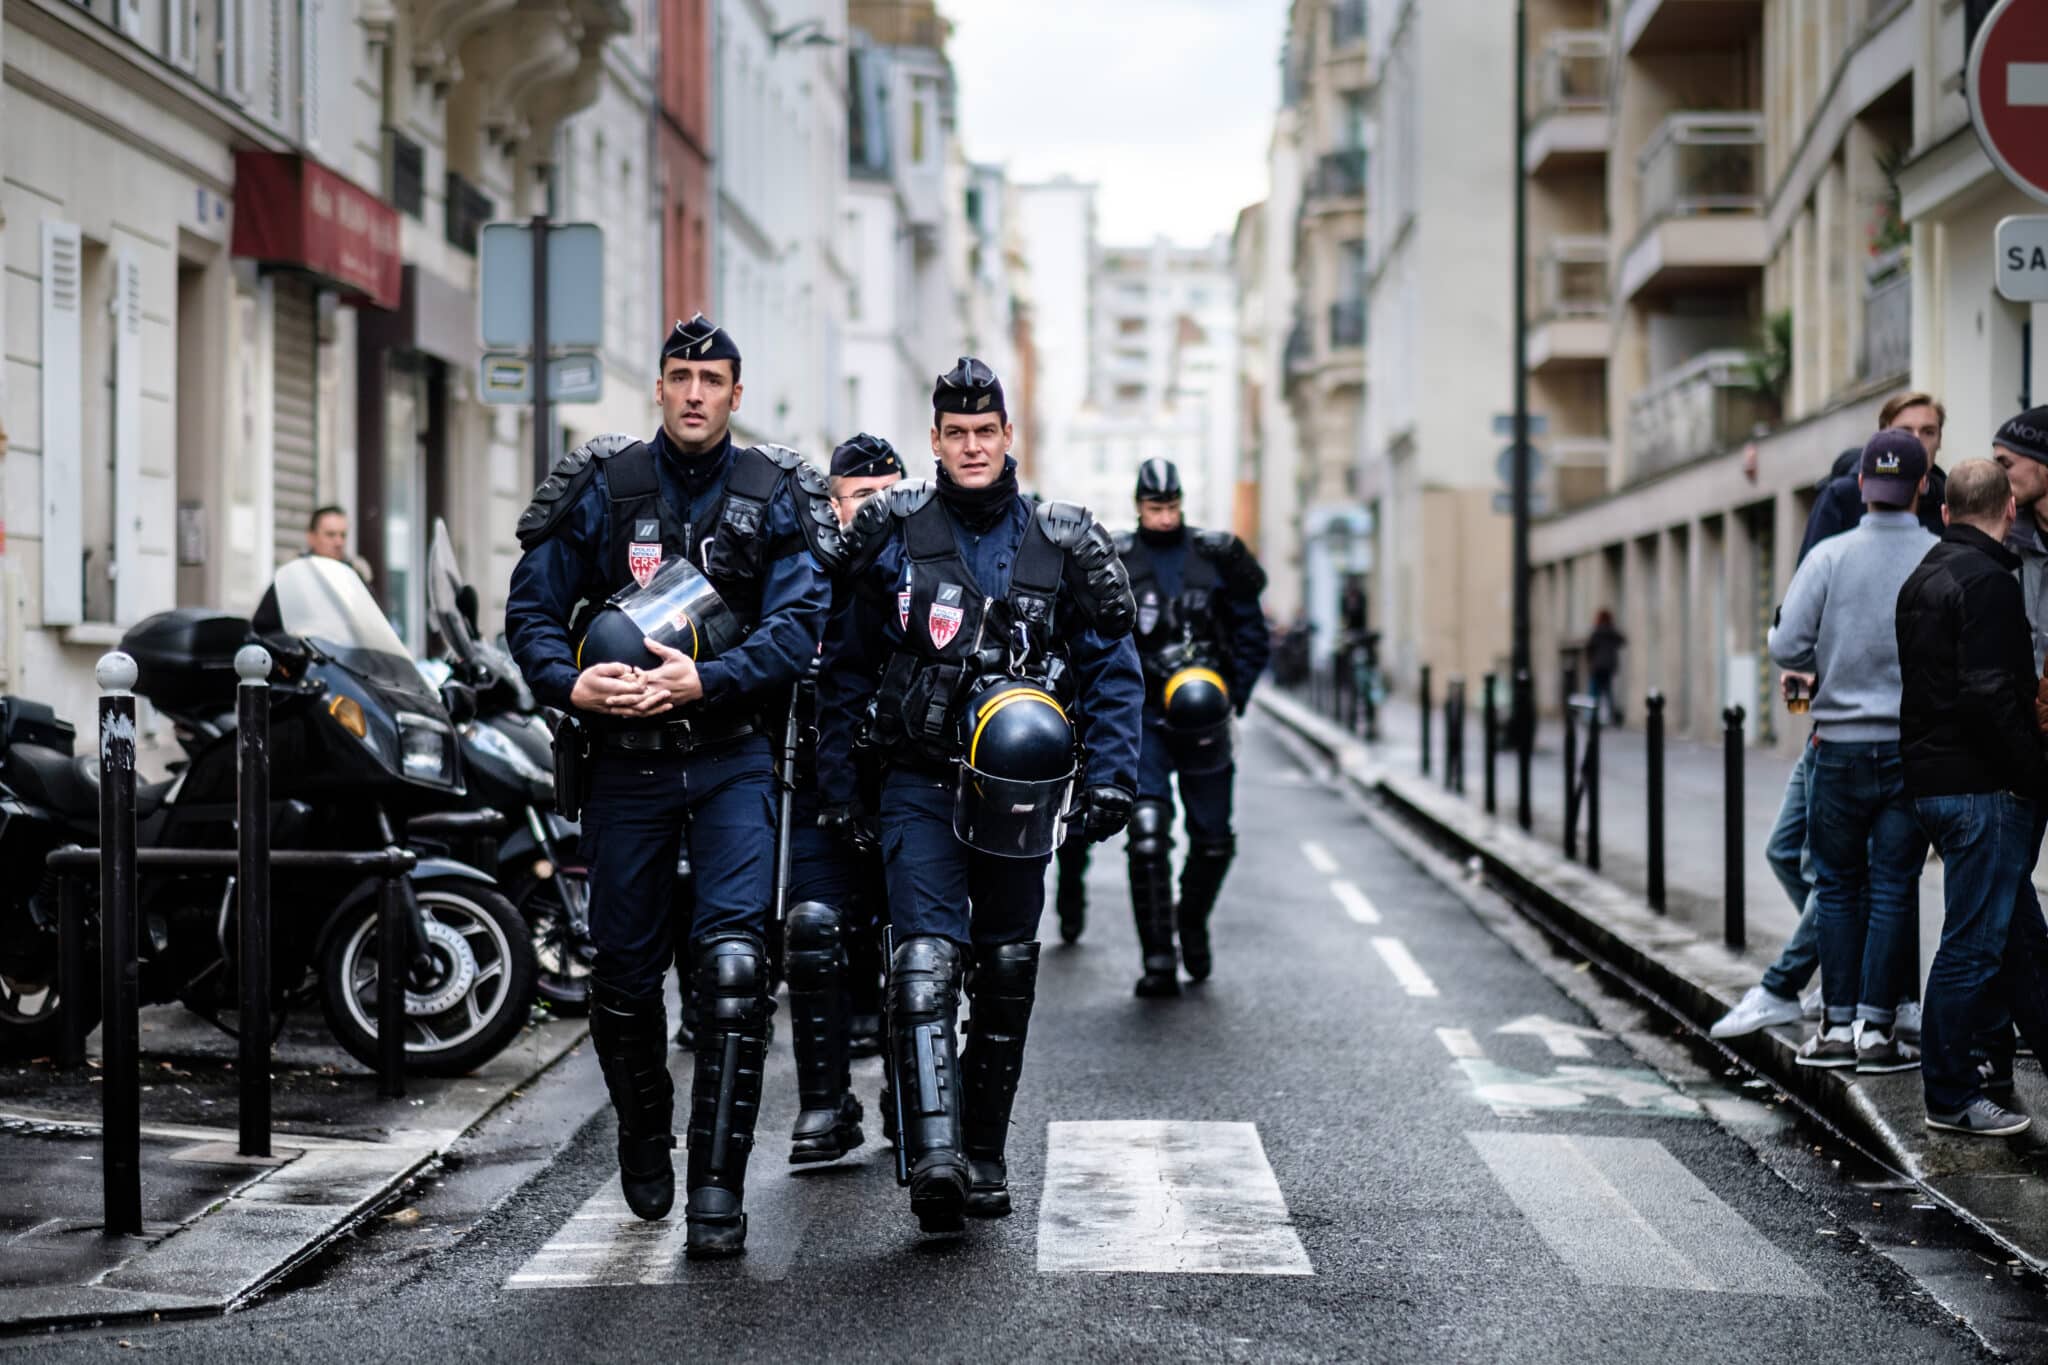 Compagn* italiani giunti a Parigi per l’omaggio a Clément Méric arrestati e trattenuti